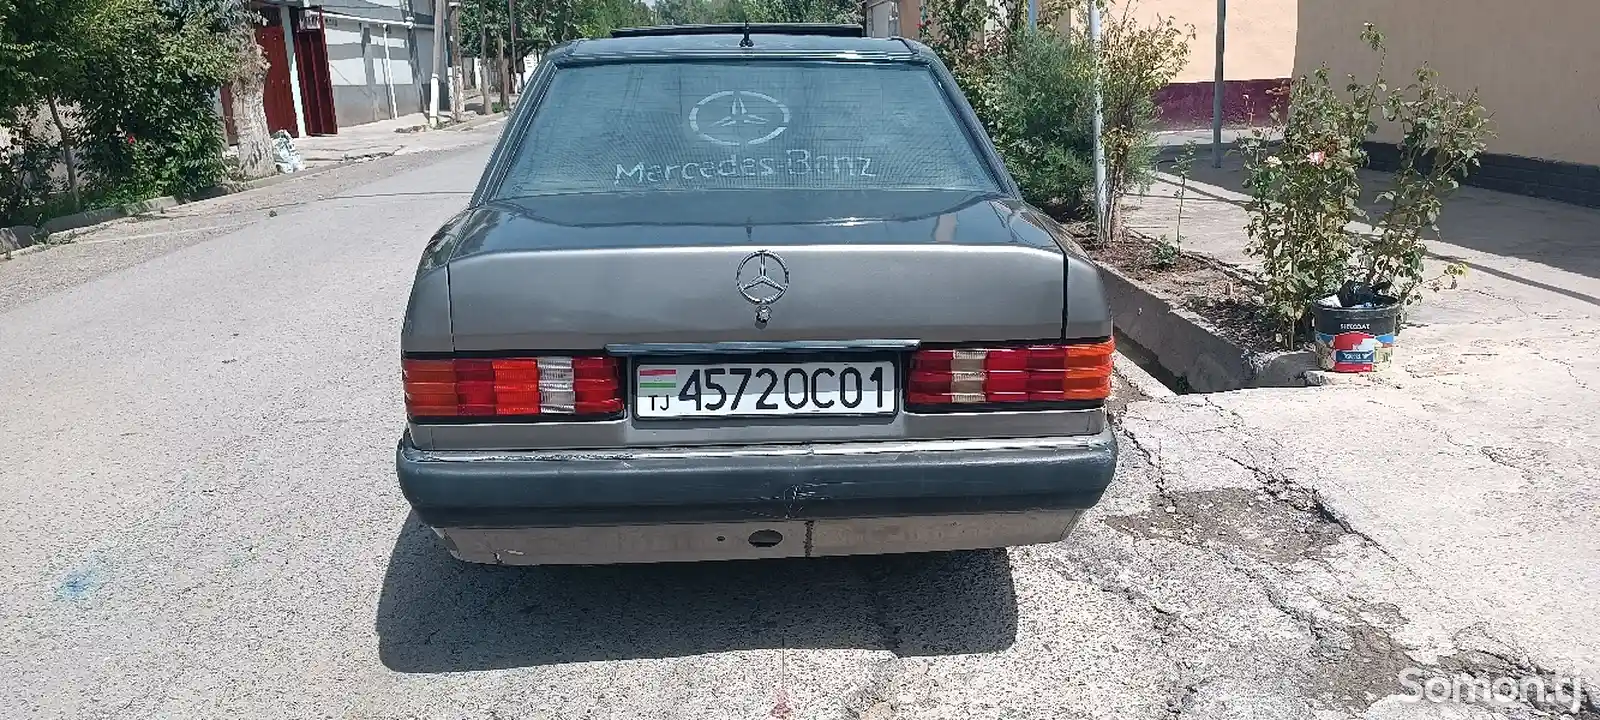 Mercedes-Benz W201, 1992-3